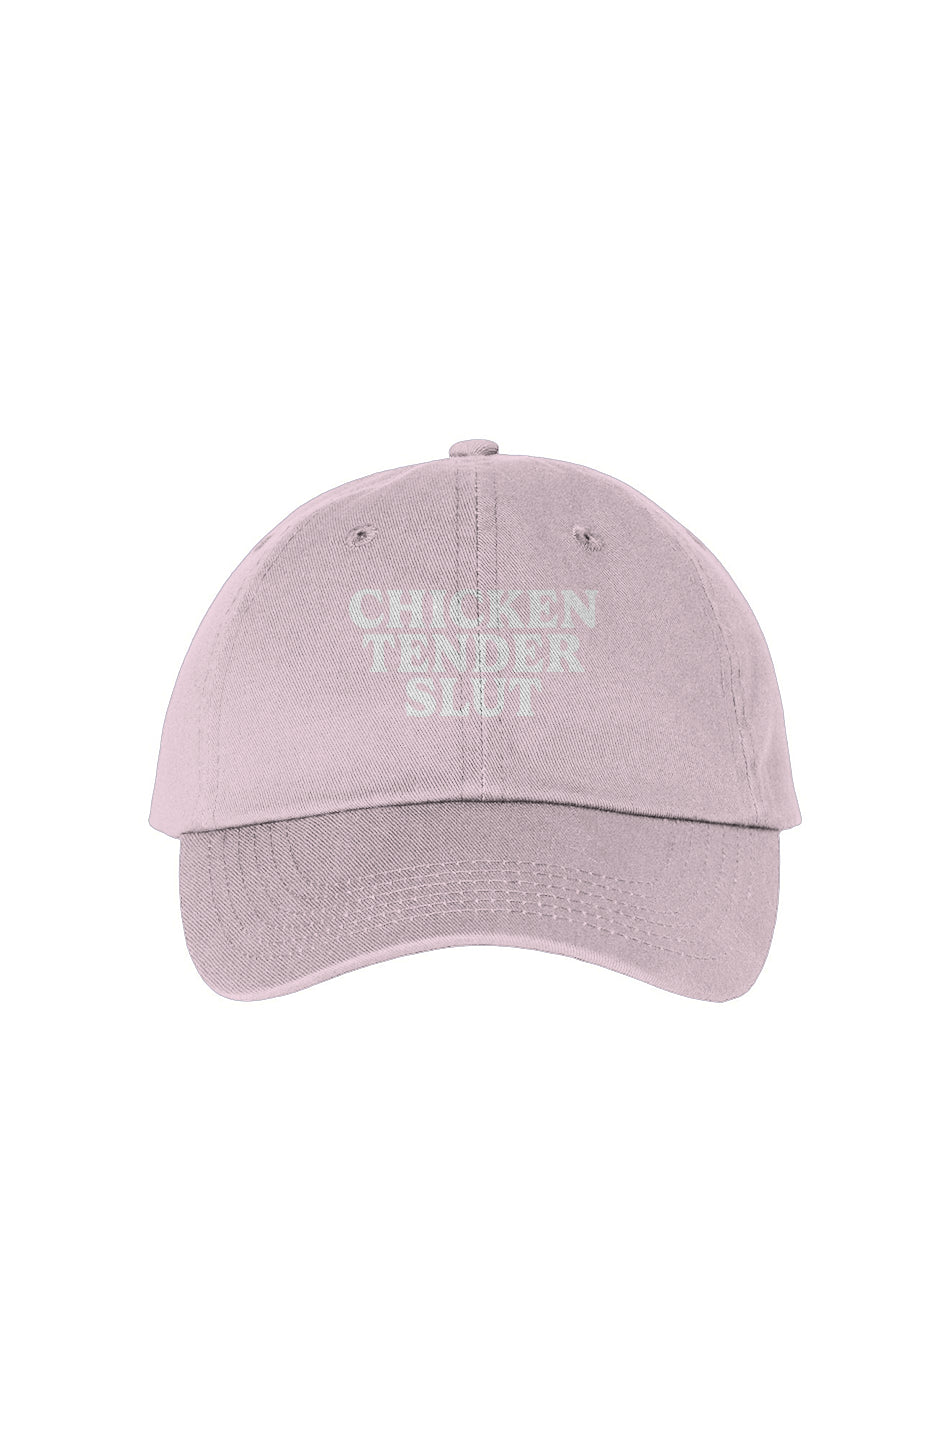 Chicken Tender Hat